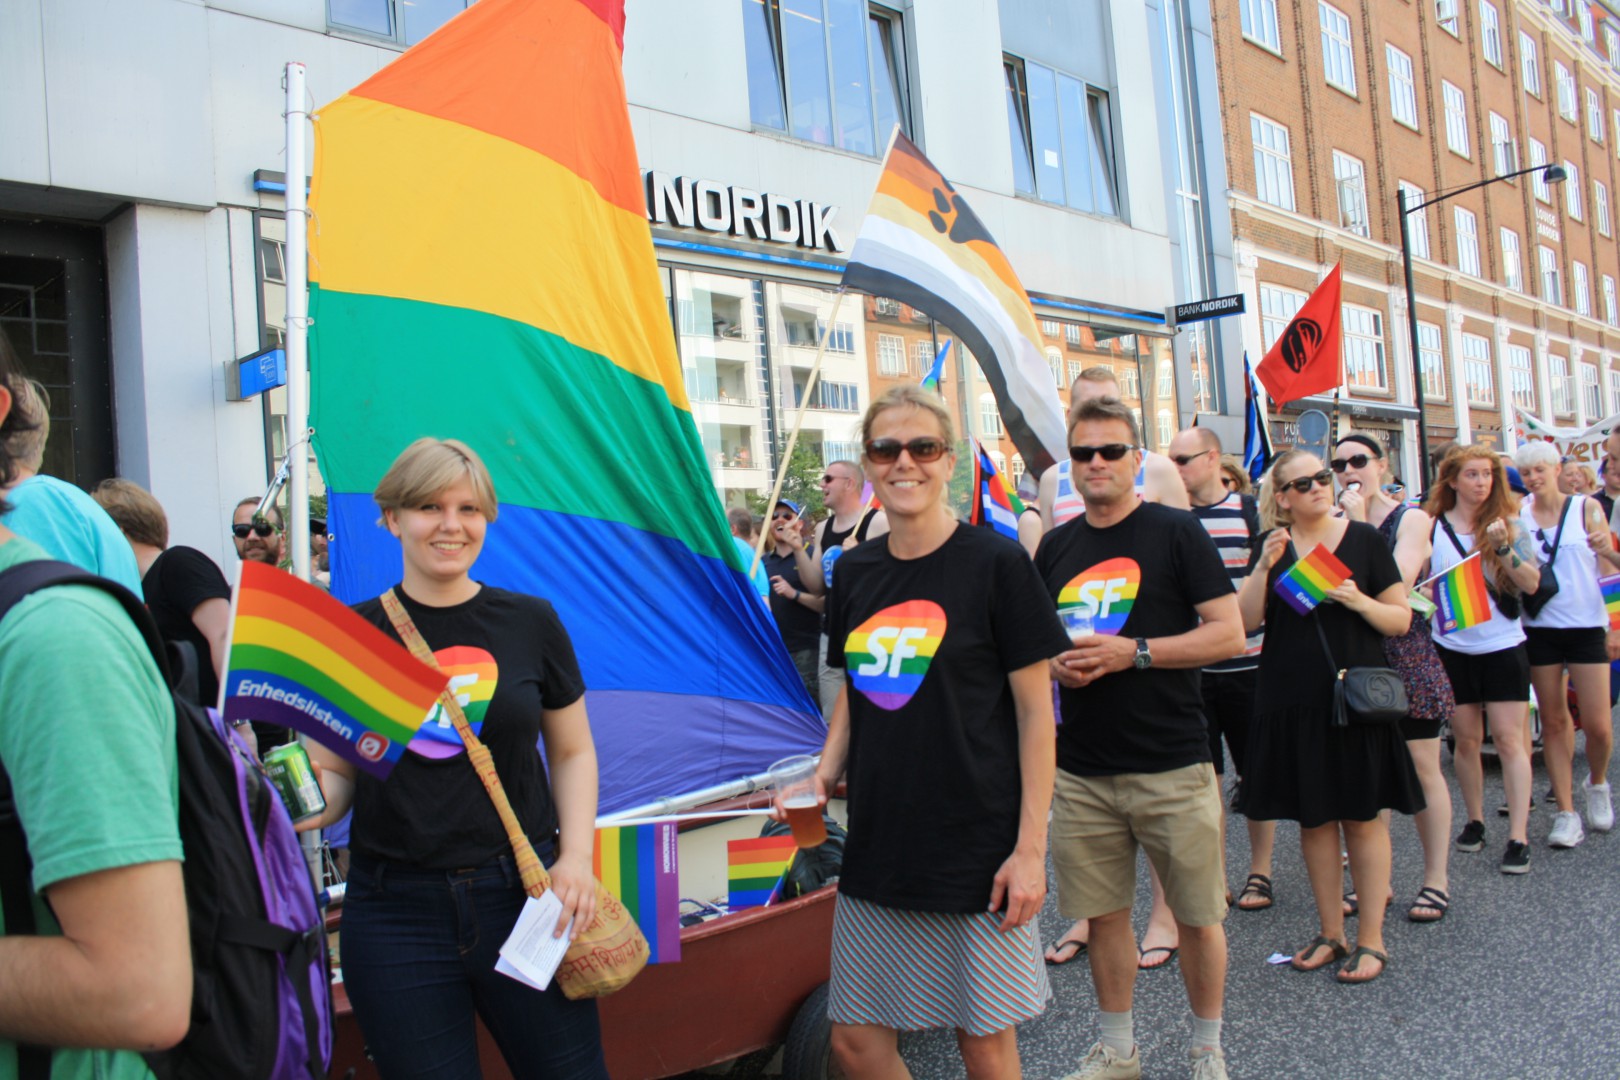 SFU og SF ”sejlede” med deres Pride-skib gennem gaderne for mangfoldighed // Foto: Emilie Schlie